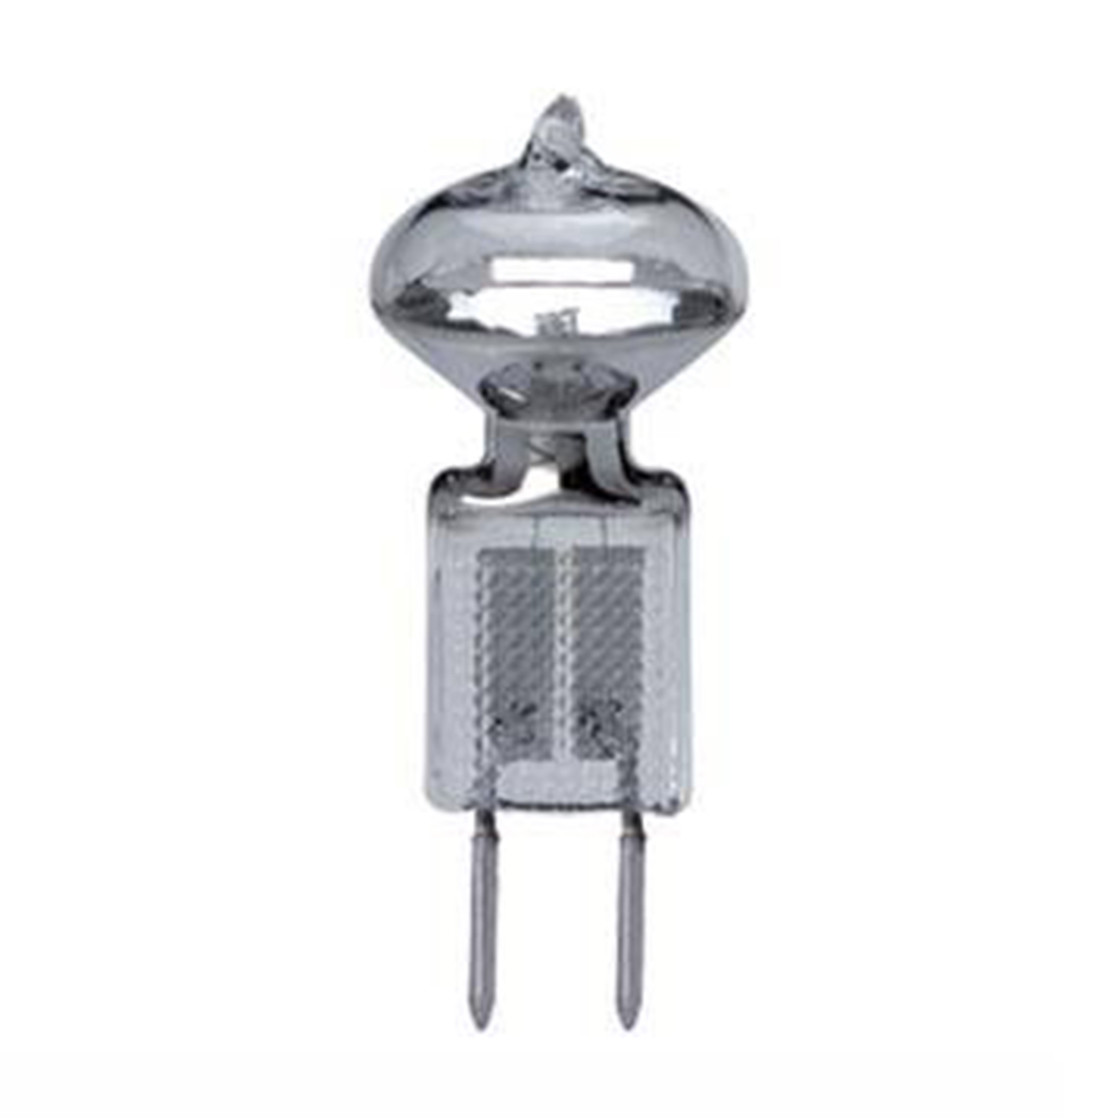 G4 10W 12V - klar - Halogenlampe Halogen Lampe Stiftsockel oder